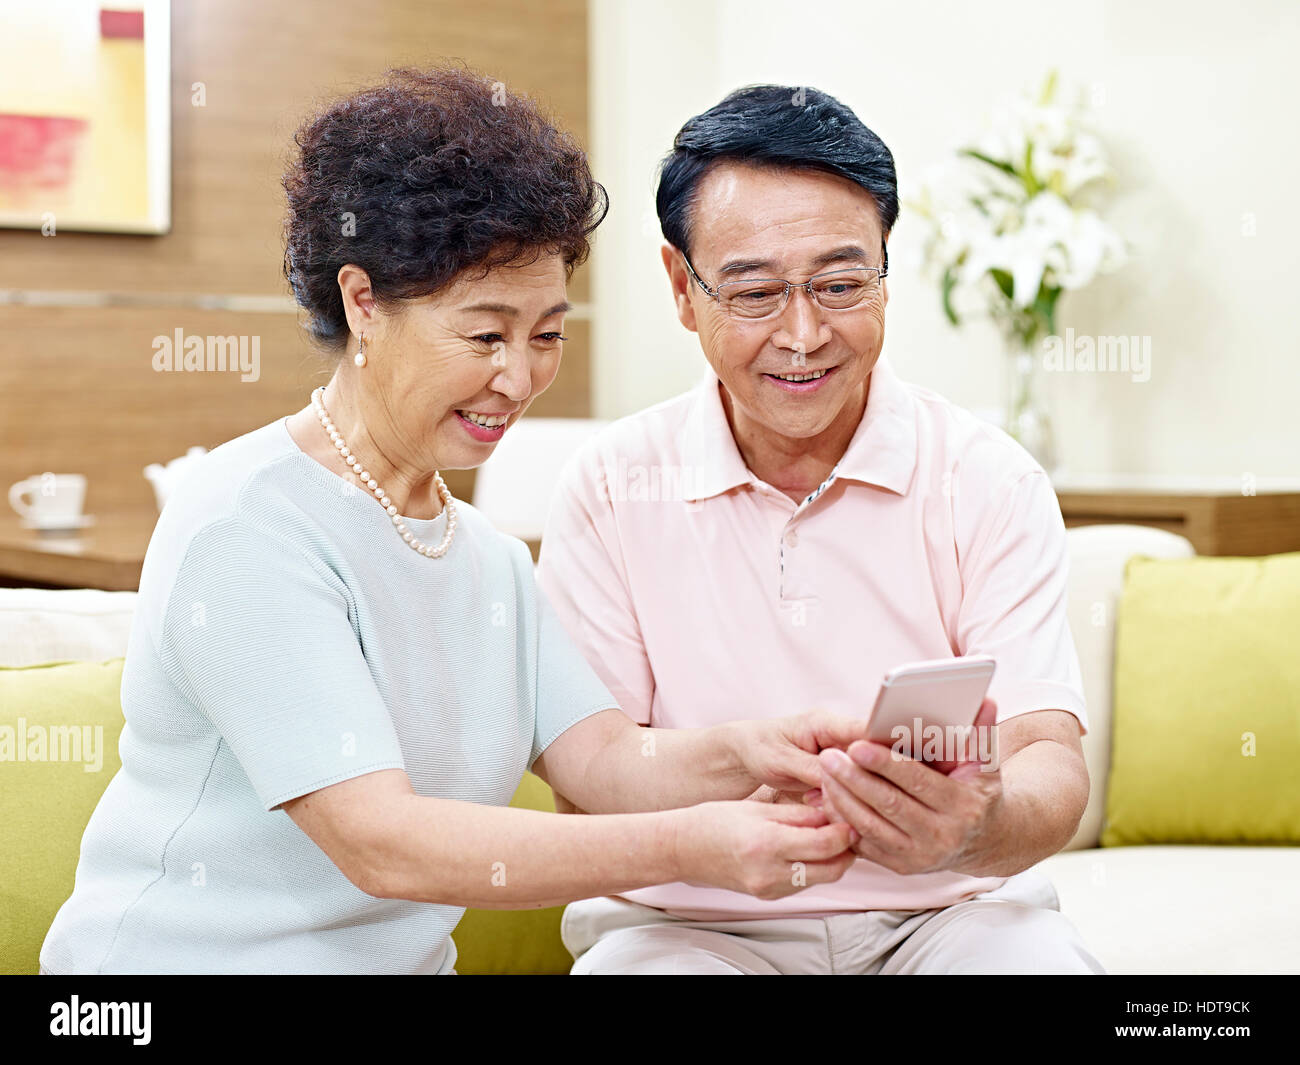 Senior asian giovane seduto sul divano guardando al cellulare insieme, felice e sorridente Foto Stock